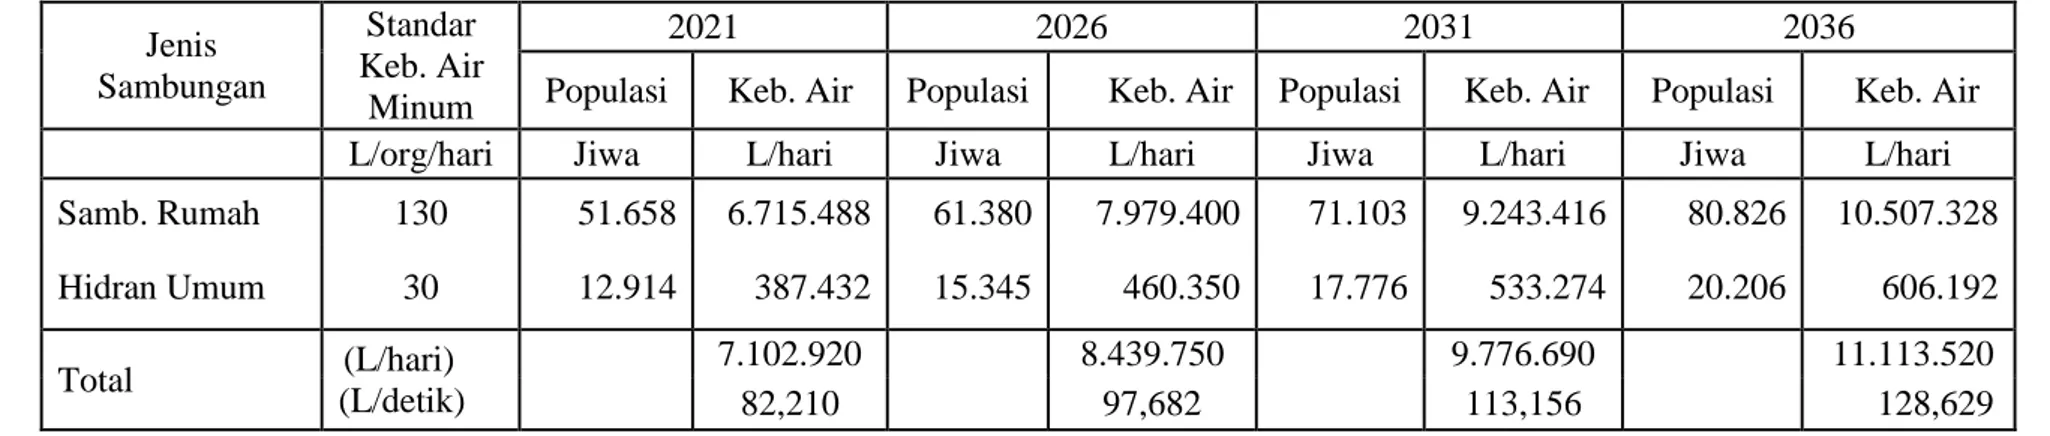 Tabel 6 Kebutuhan Air Domestik  Jenis  Sambungan  Standar  Keb. Air  Minum  2021  2026  2031  2036 